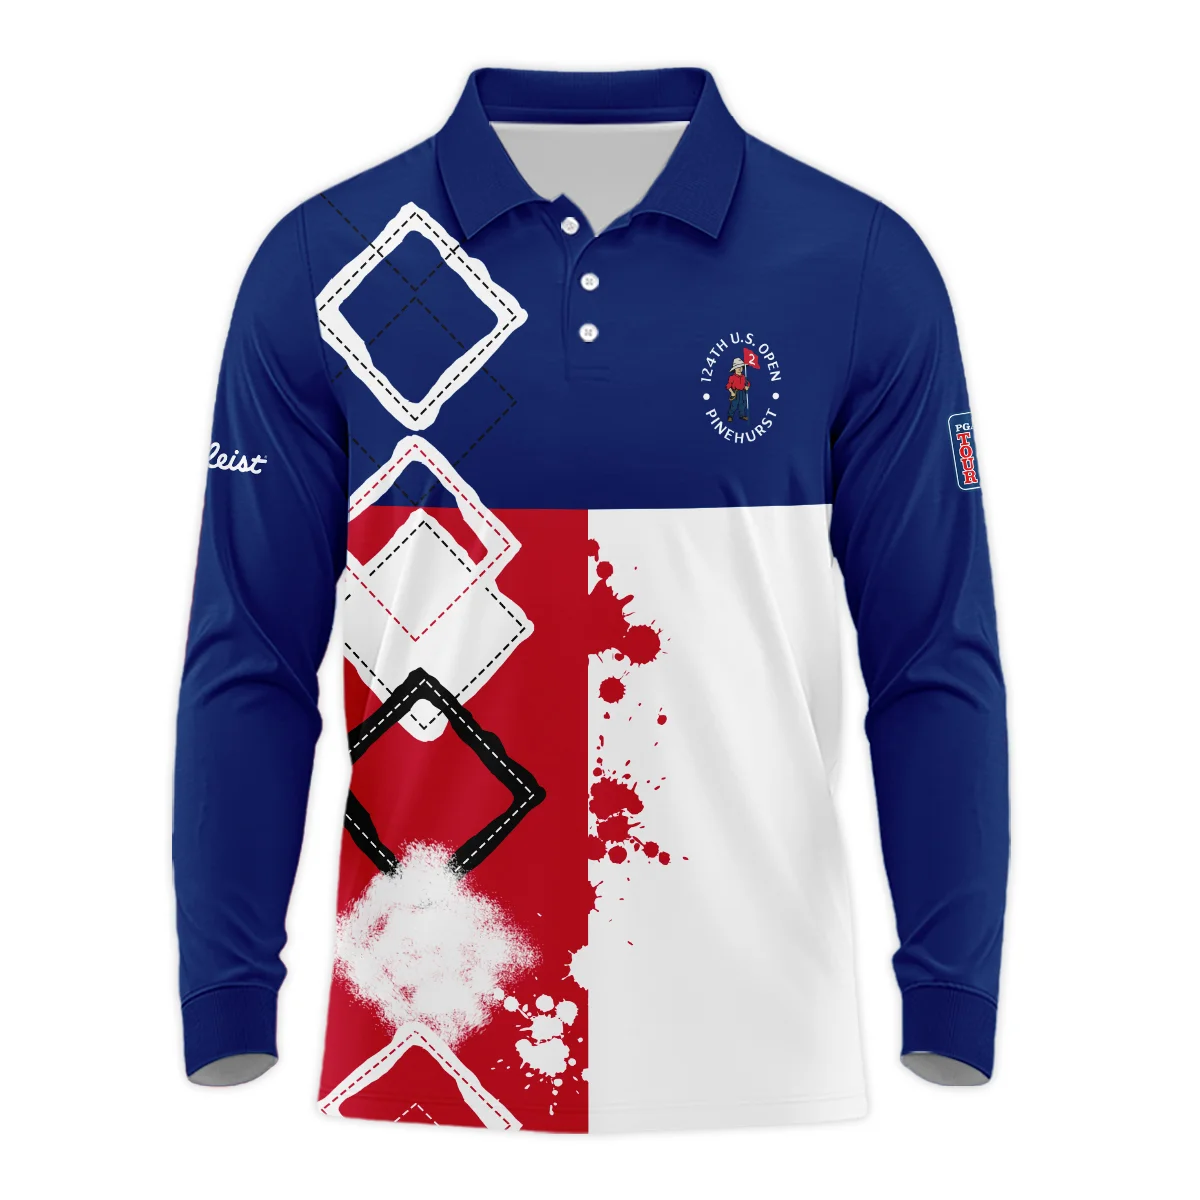 124th U.S. Open Pinehurst Titleist Long Polo Shirt Blue Red White Pattern Grunge All Over Print Long Polo Shirt For Men